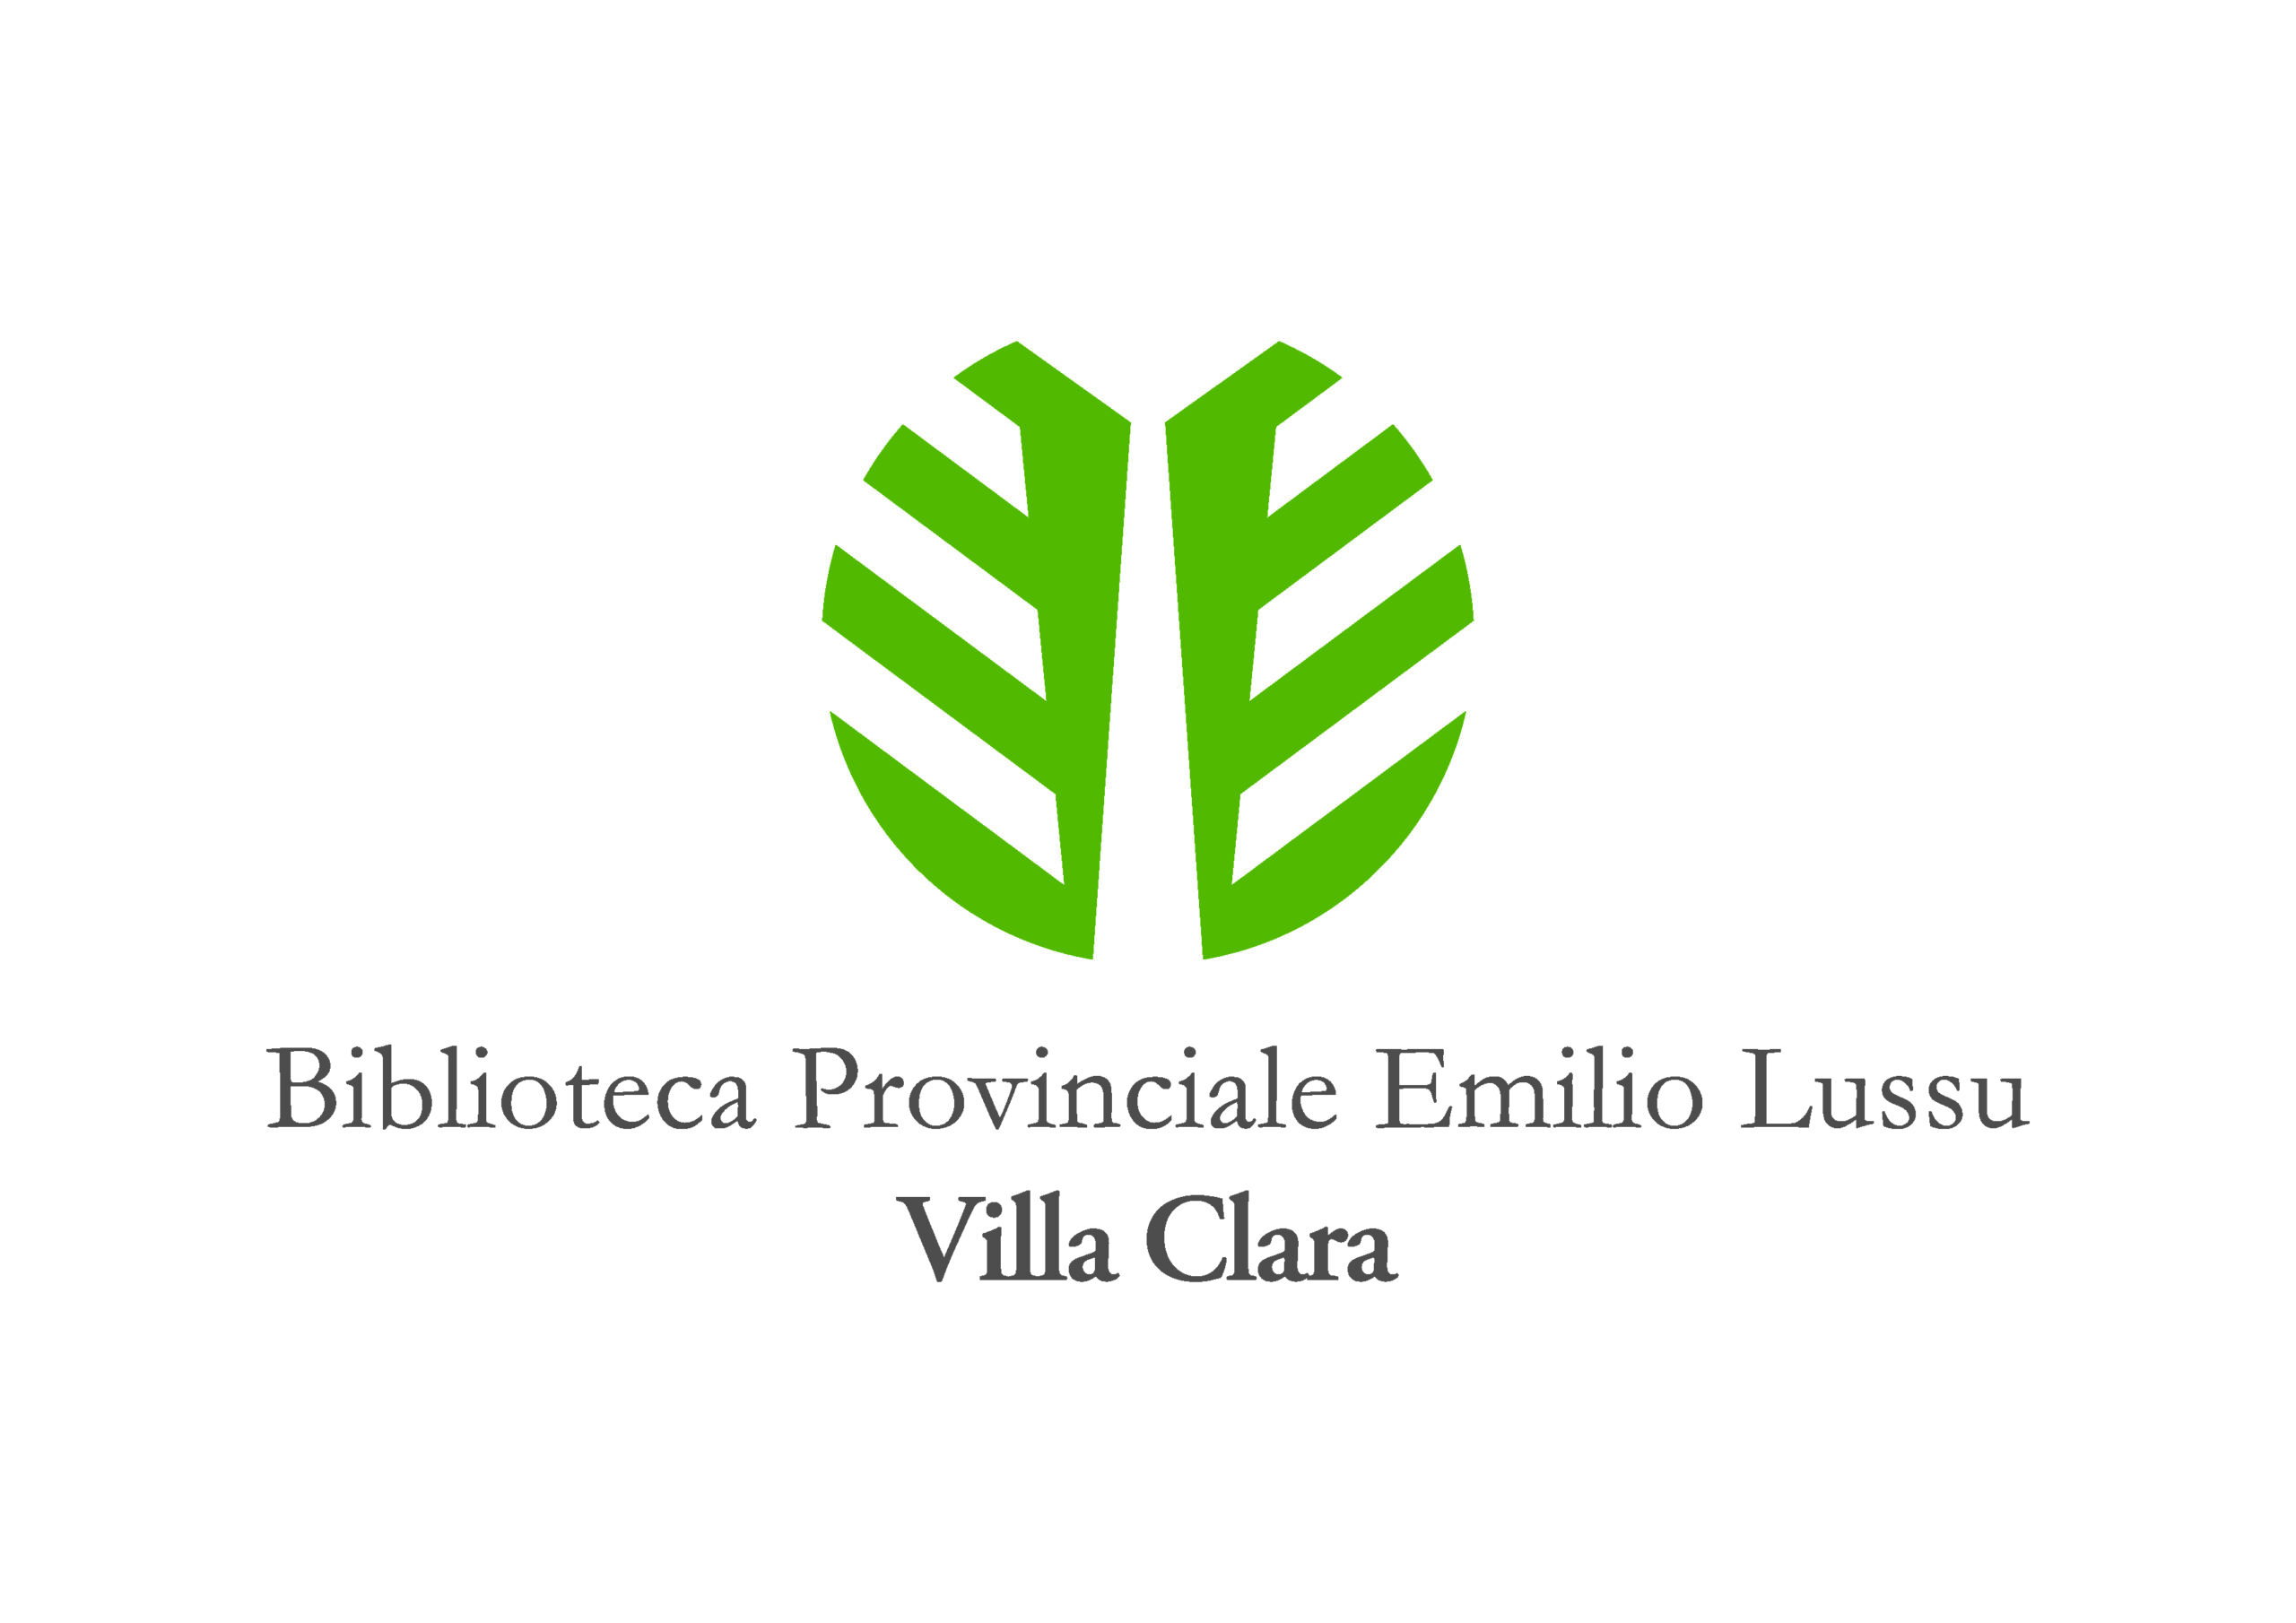 Marchio-Biblioteca-Emilio-Lussu-Massimo-Demelas-Design